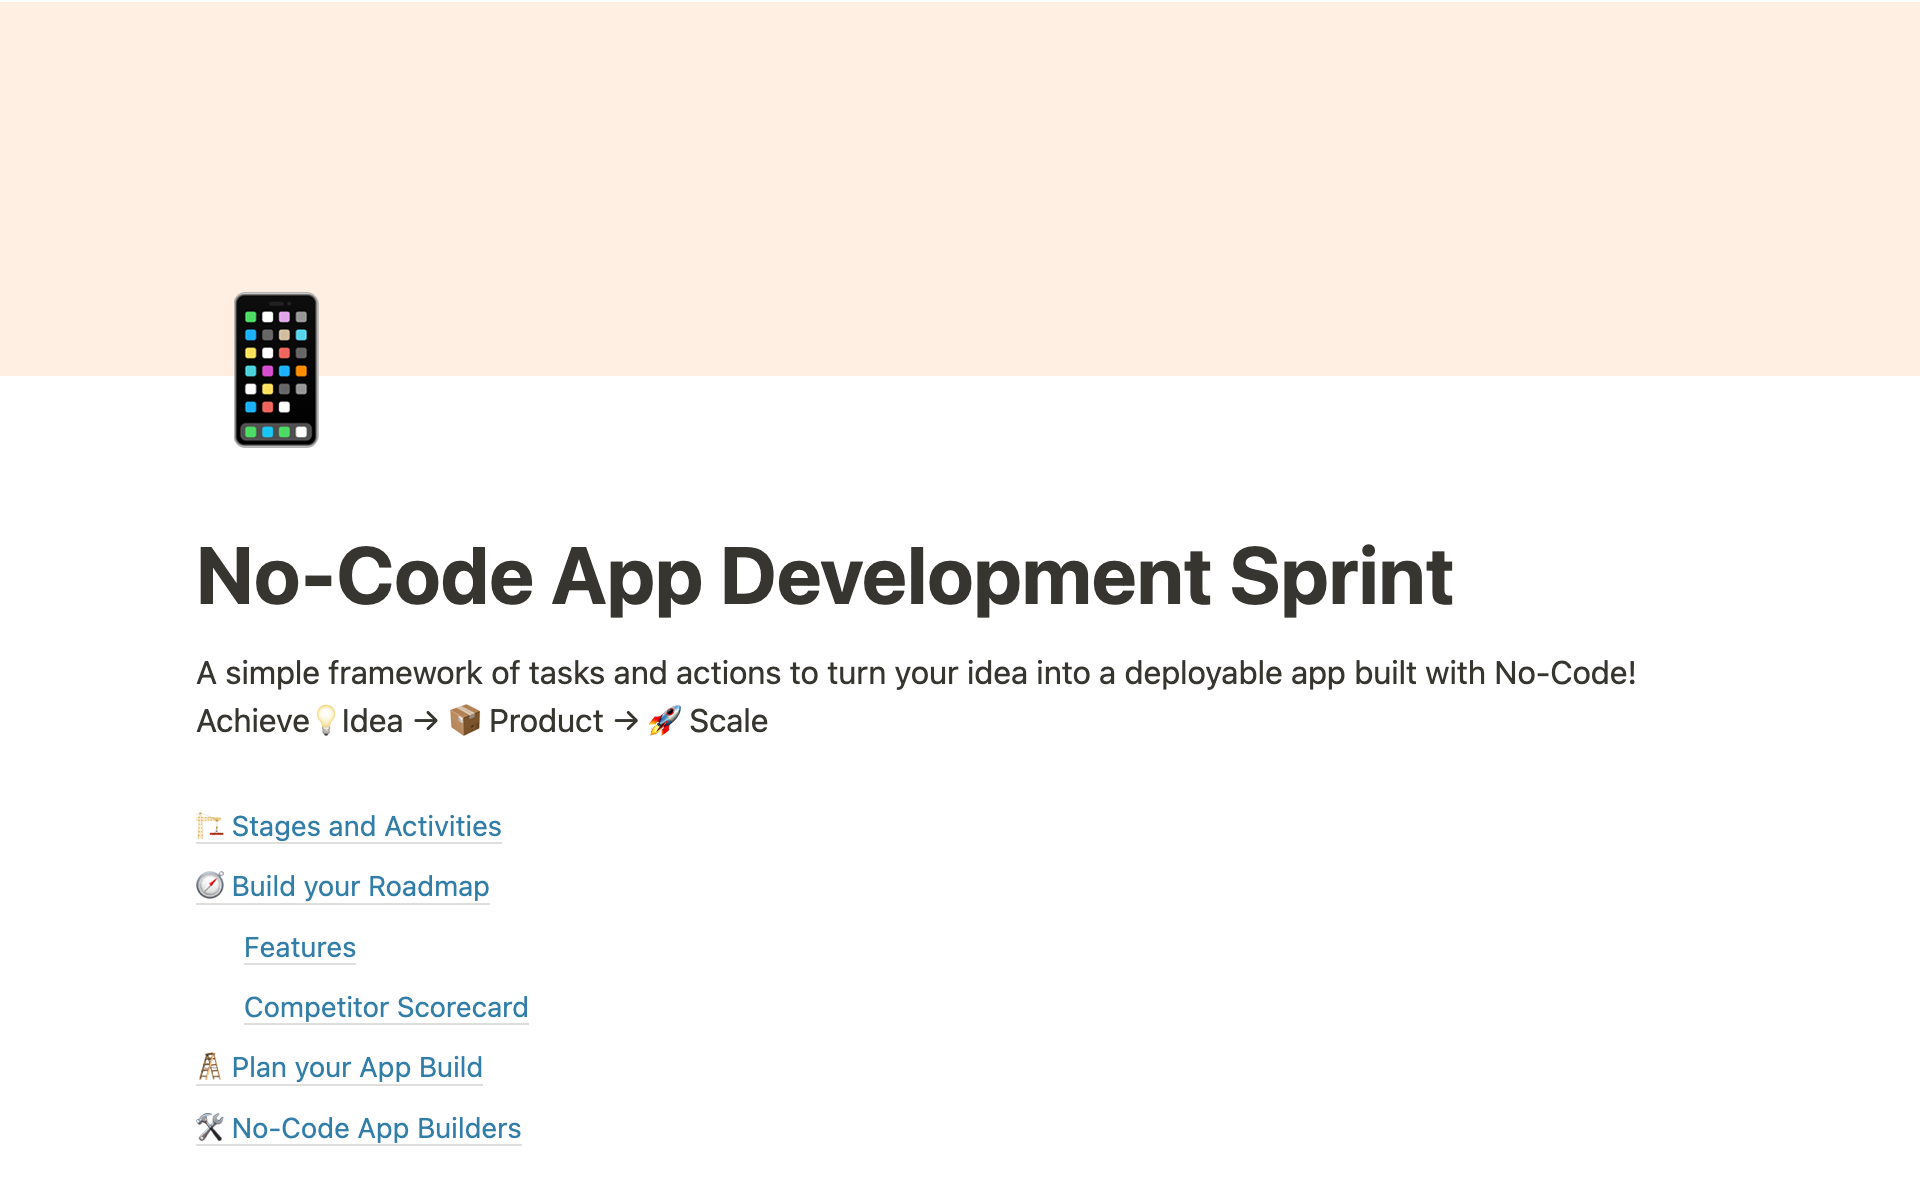 No-Code App Development Sprint님의 템플릿 미리보기